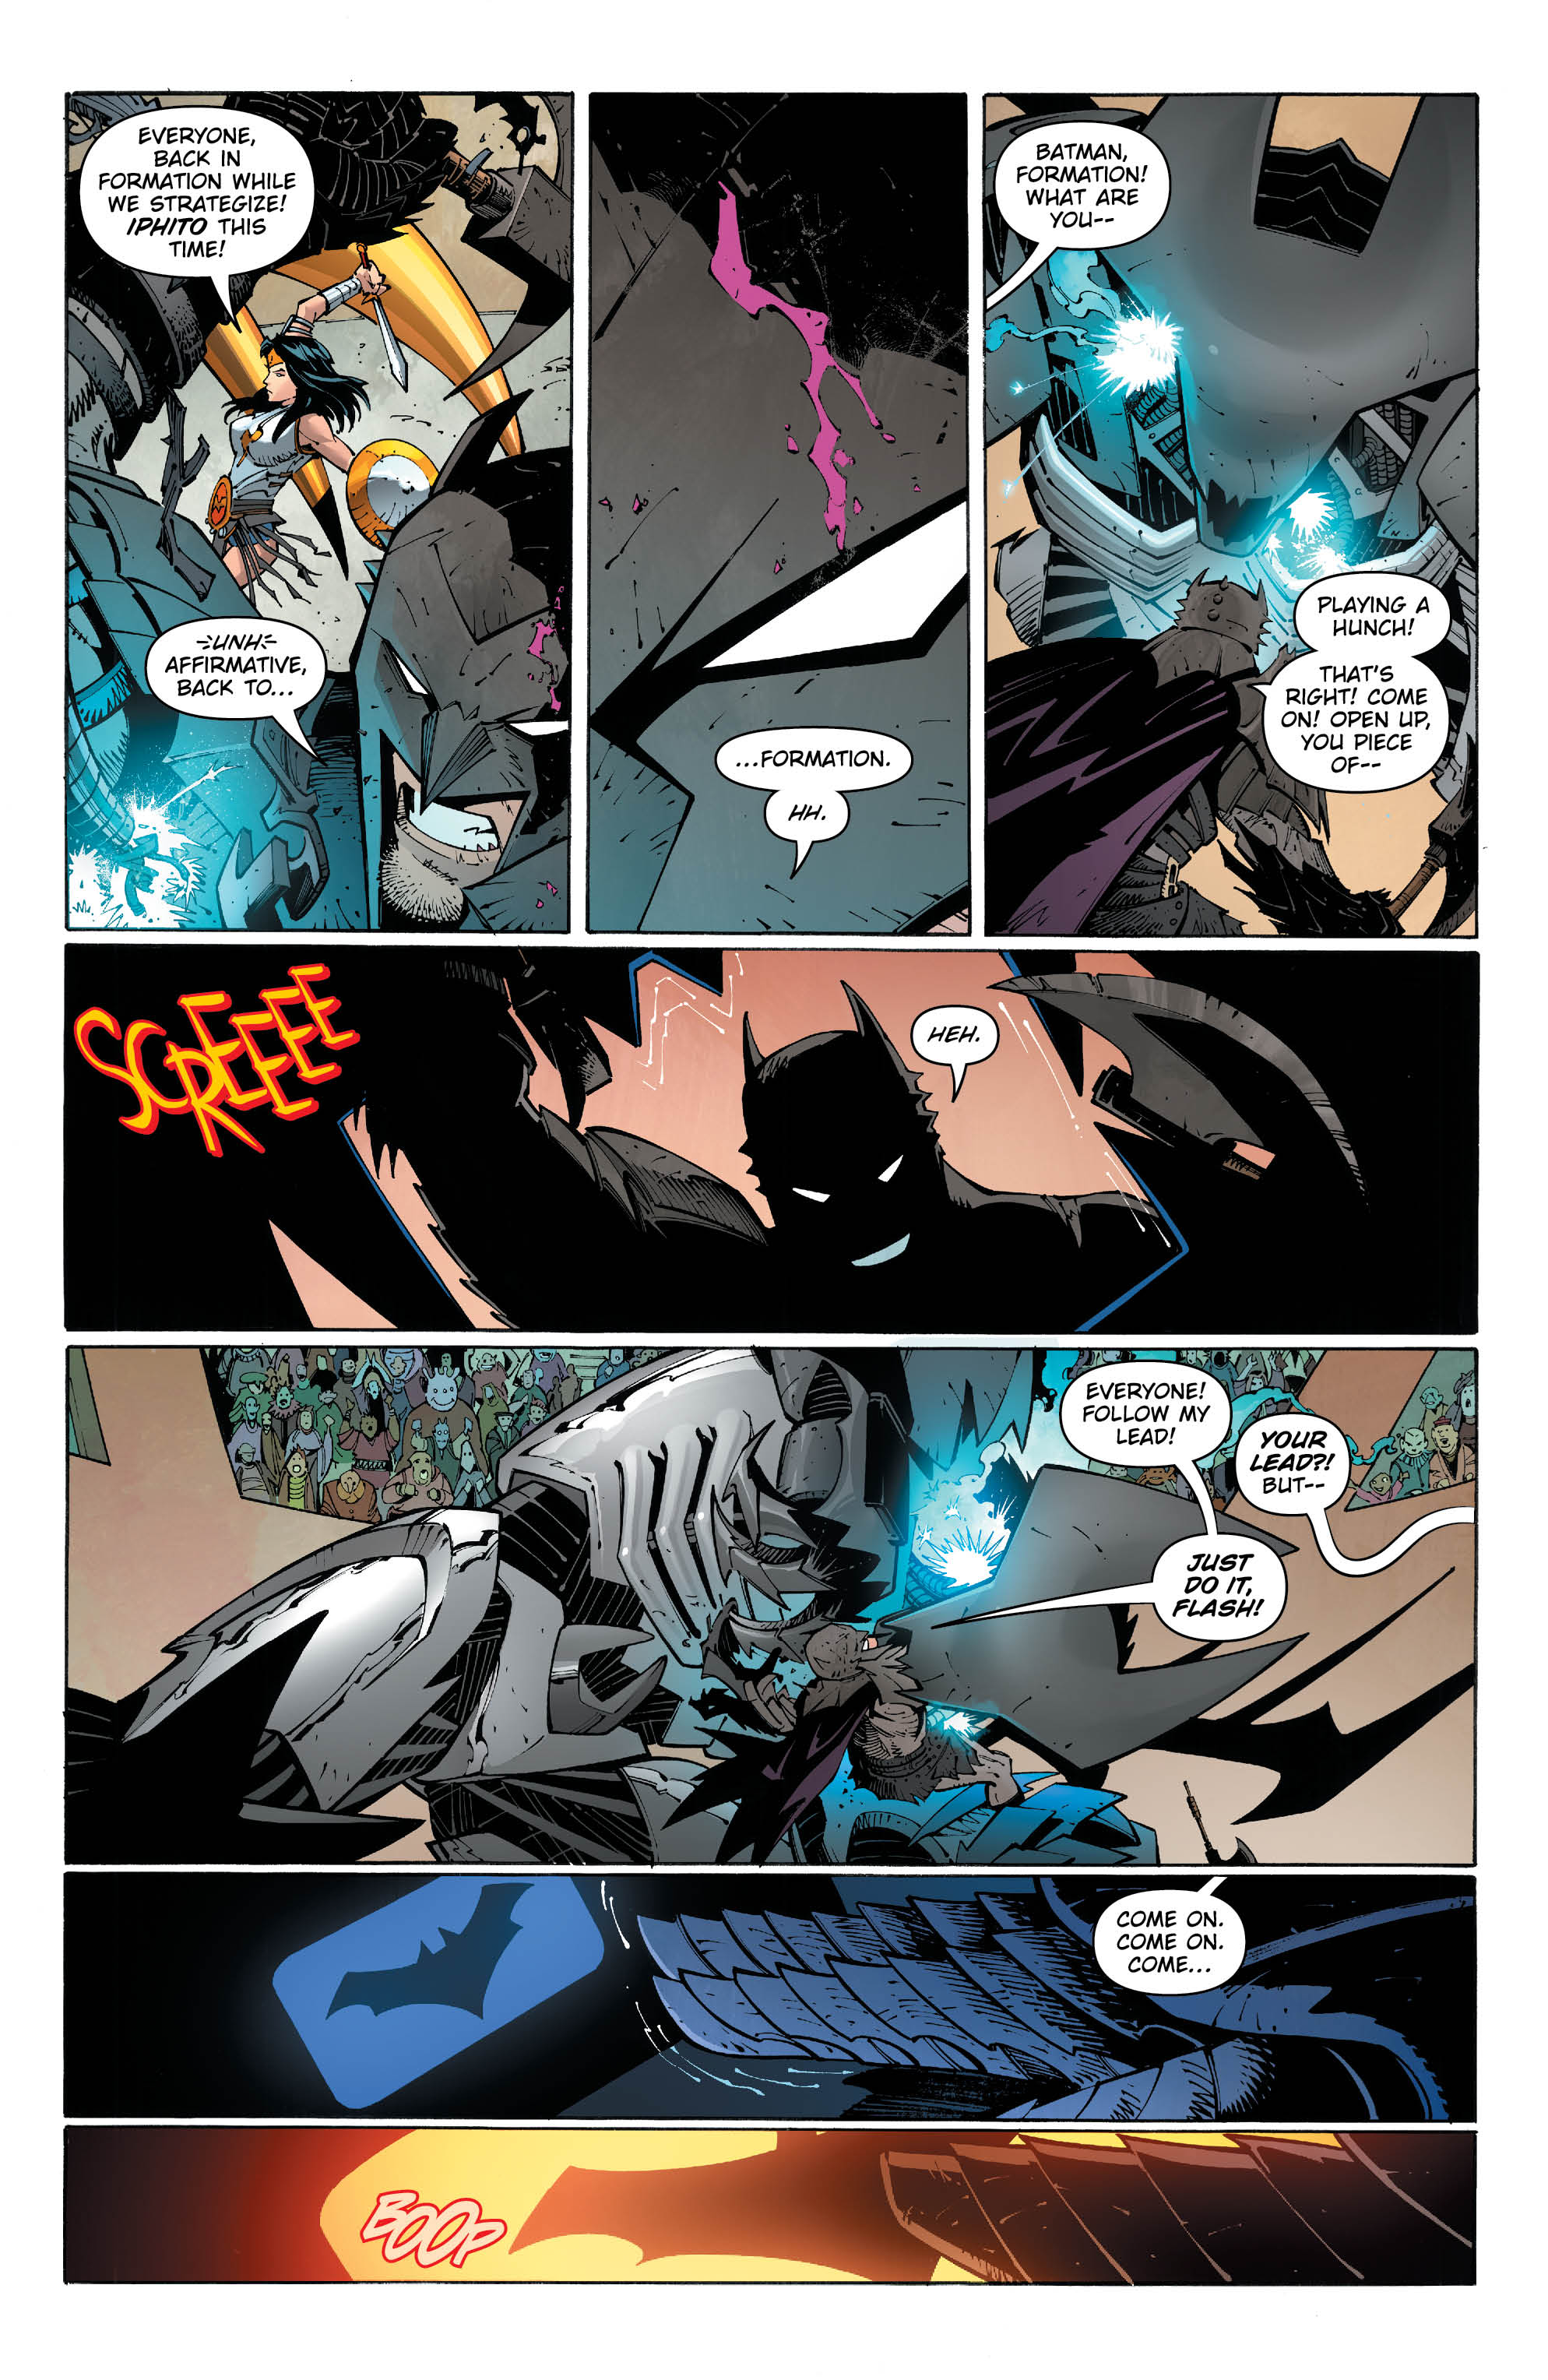 Metal Page 6 - DC Comics News